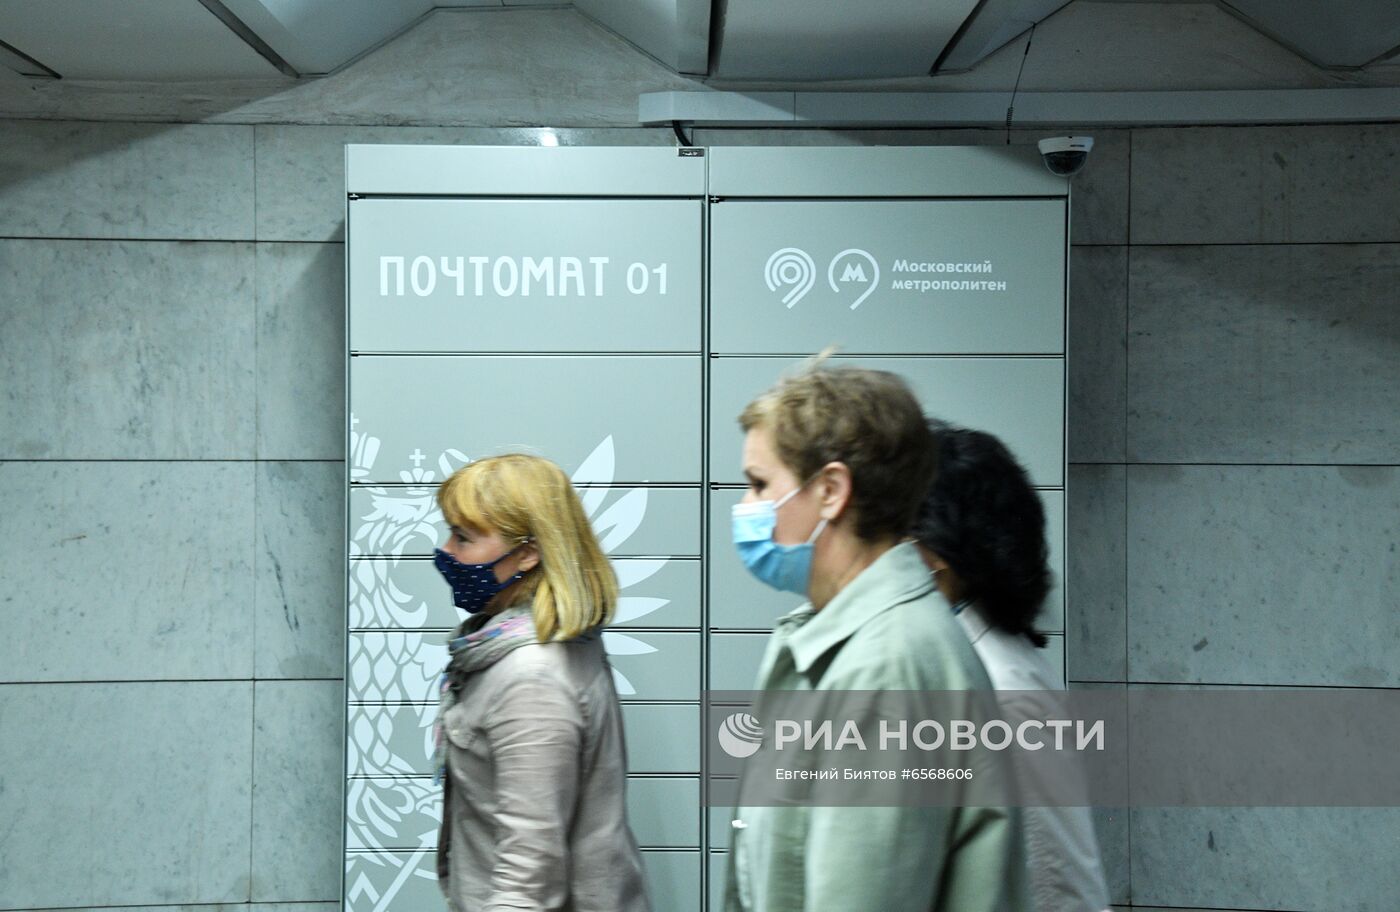  Почтомат "Почты России" установили в Московском метро